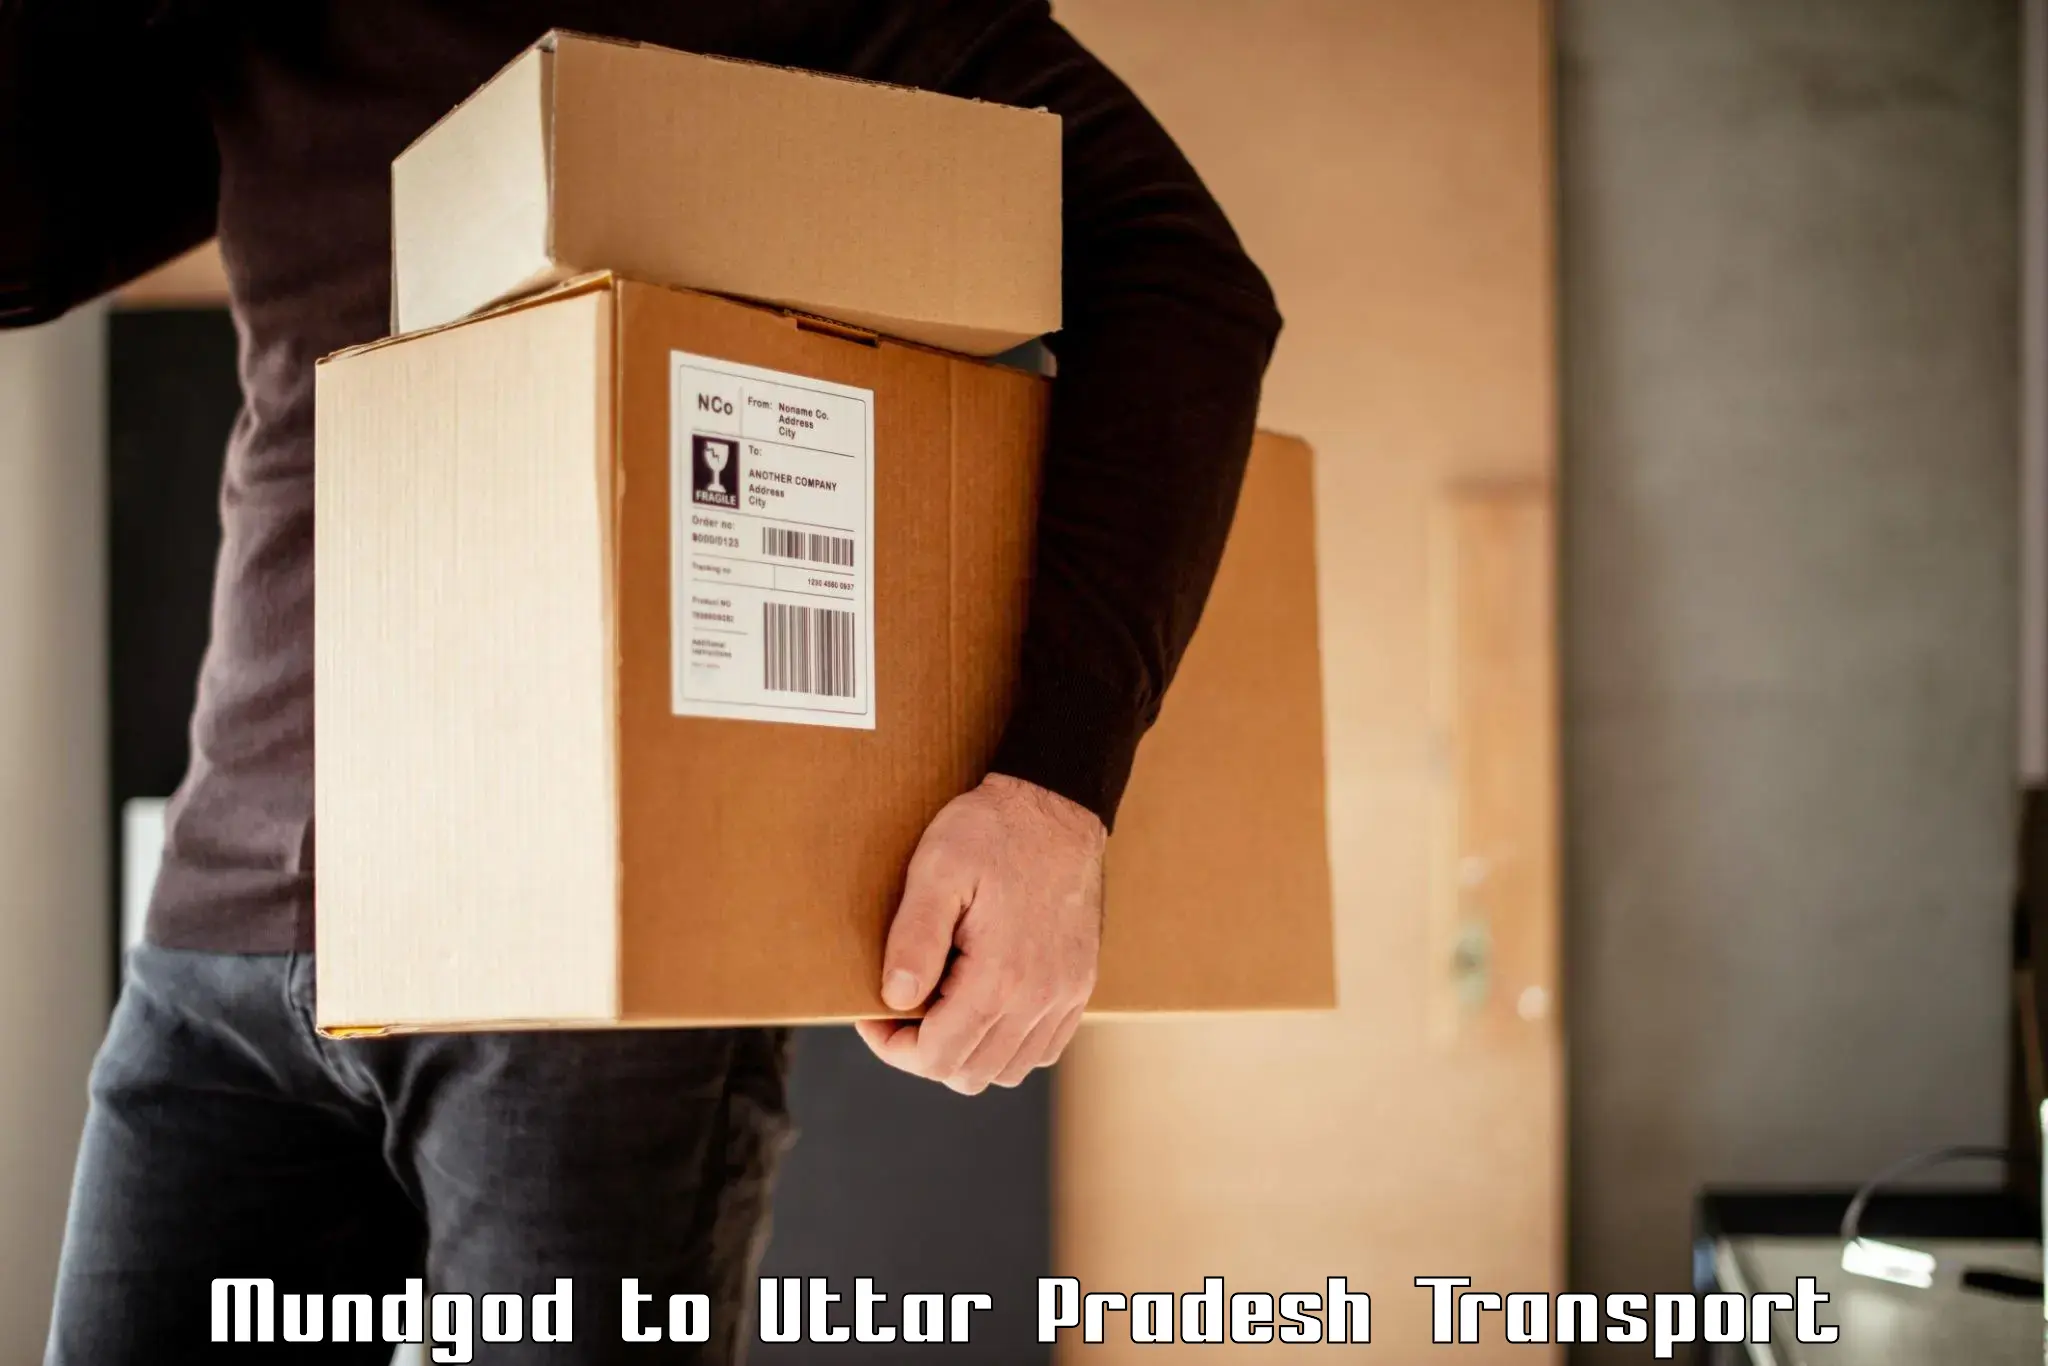 Nearest transport service Mundgod to Uttar Pradesh